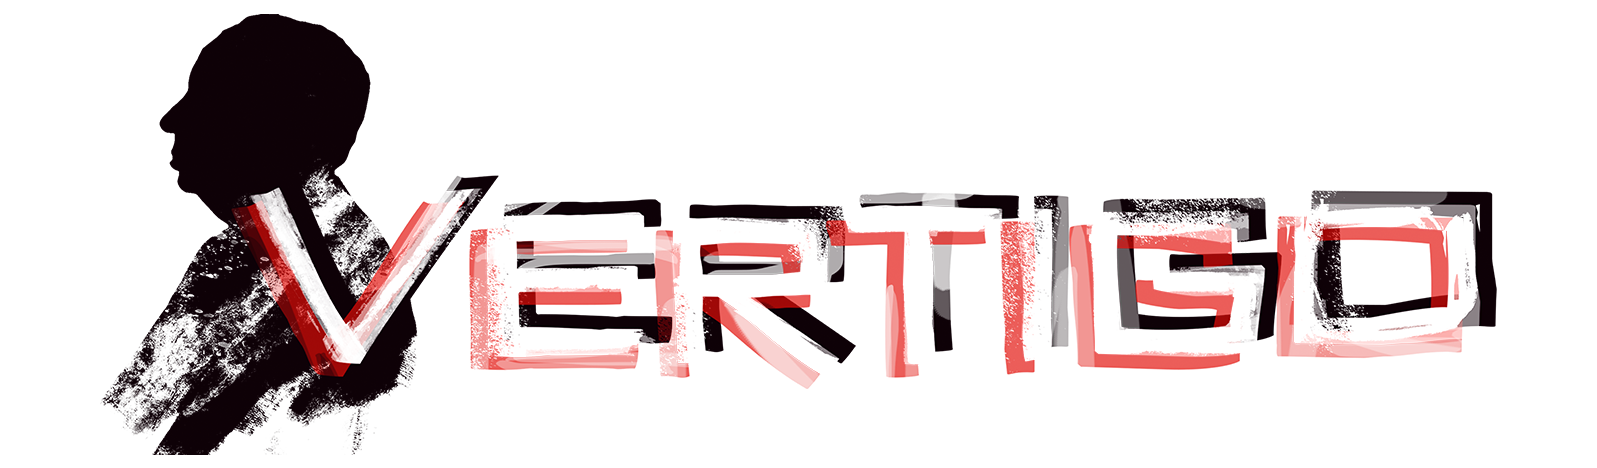 Alfred Hitchcock Vertigo Limited Edition - PS5 [EUA] - Xande A Lenda Games.  A sua loja de jogos!